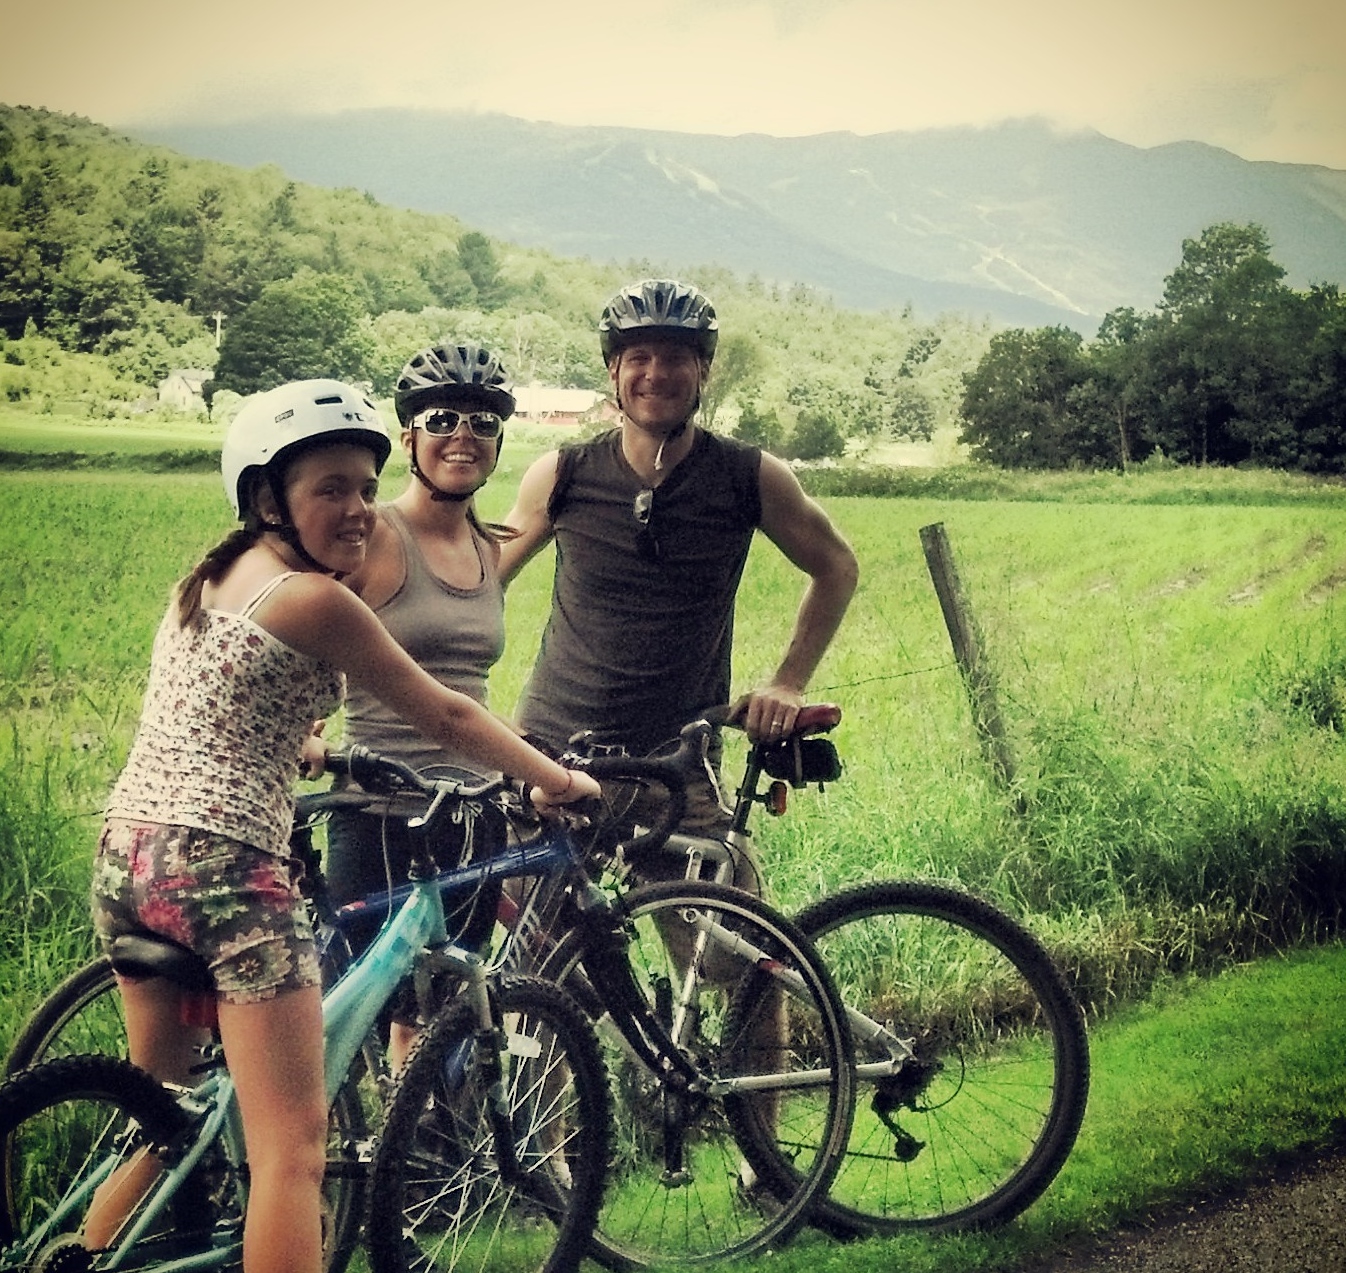 Vermont Biking on July 4th, 2013